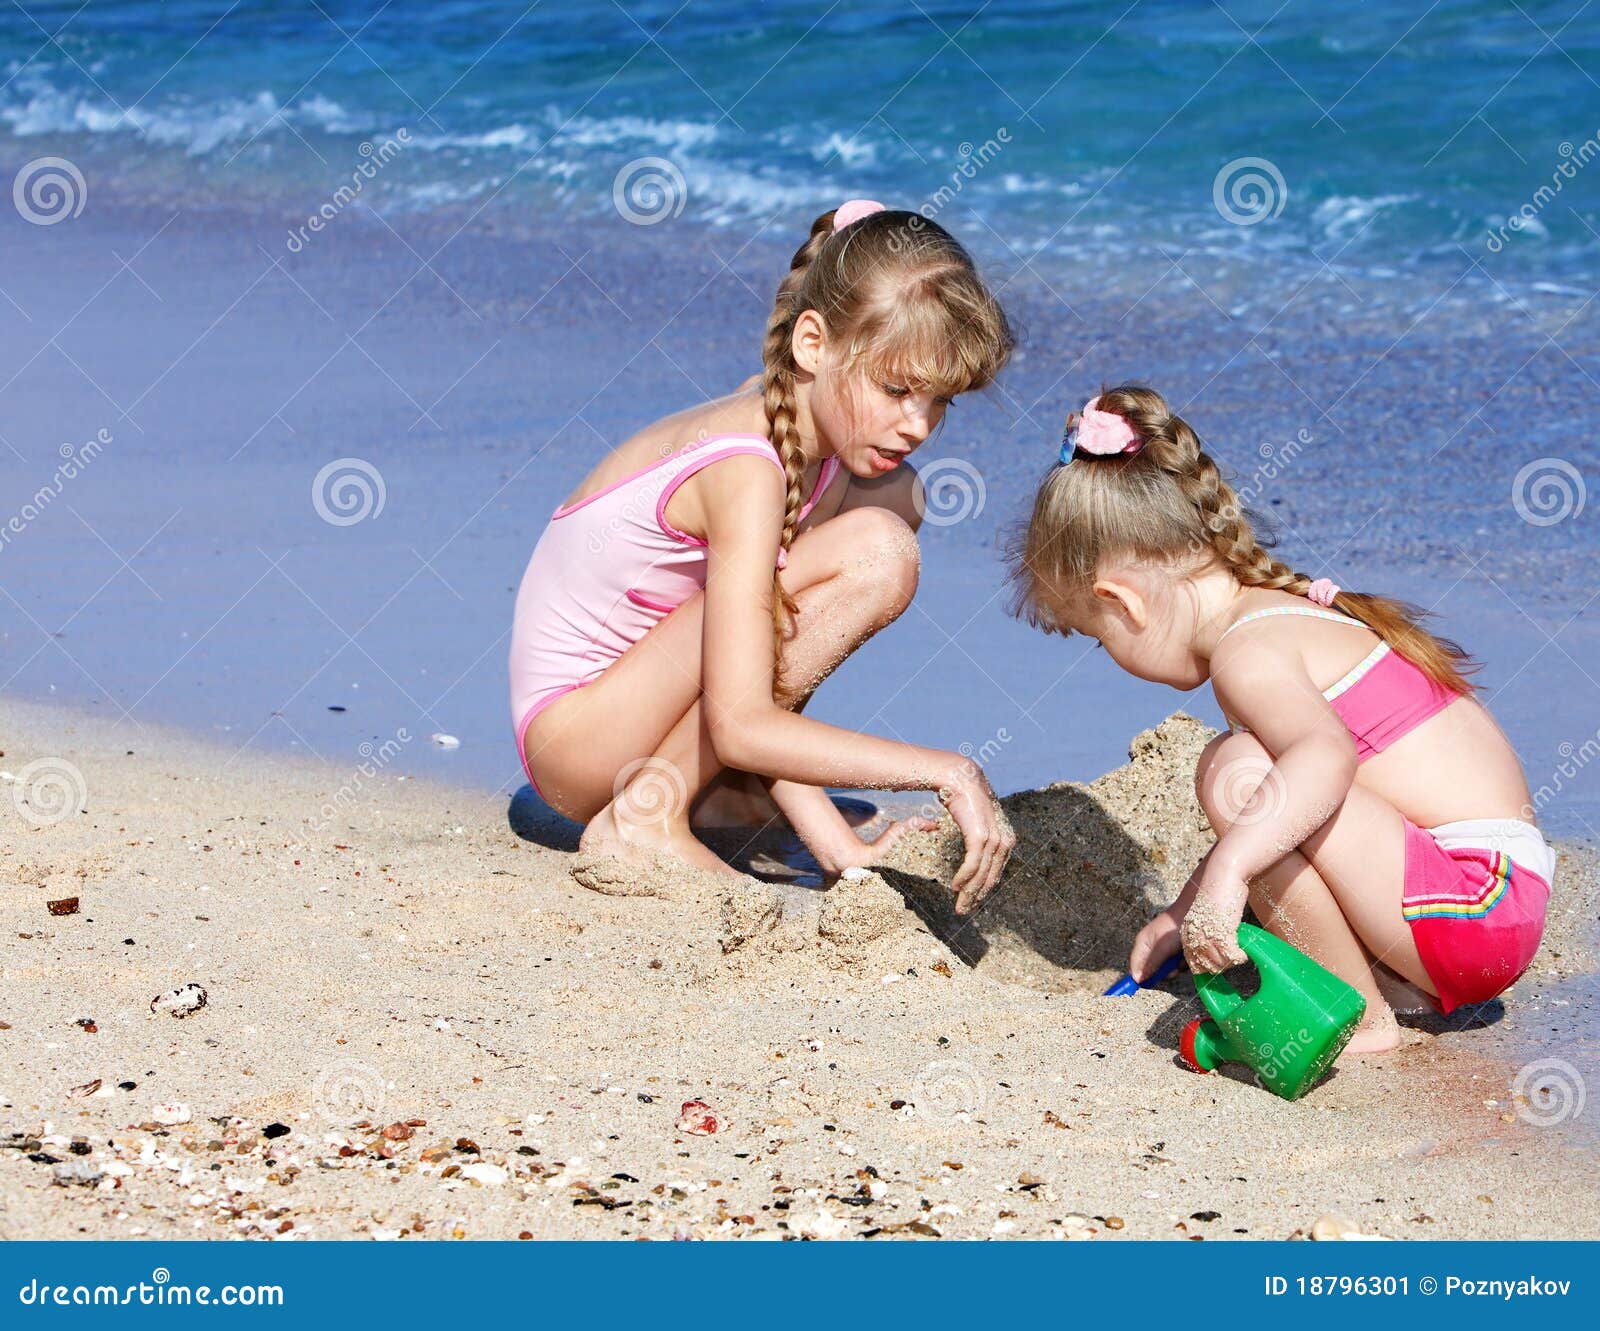 фото детей на голом пляже фото 70